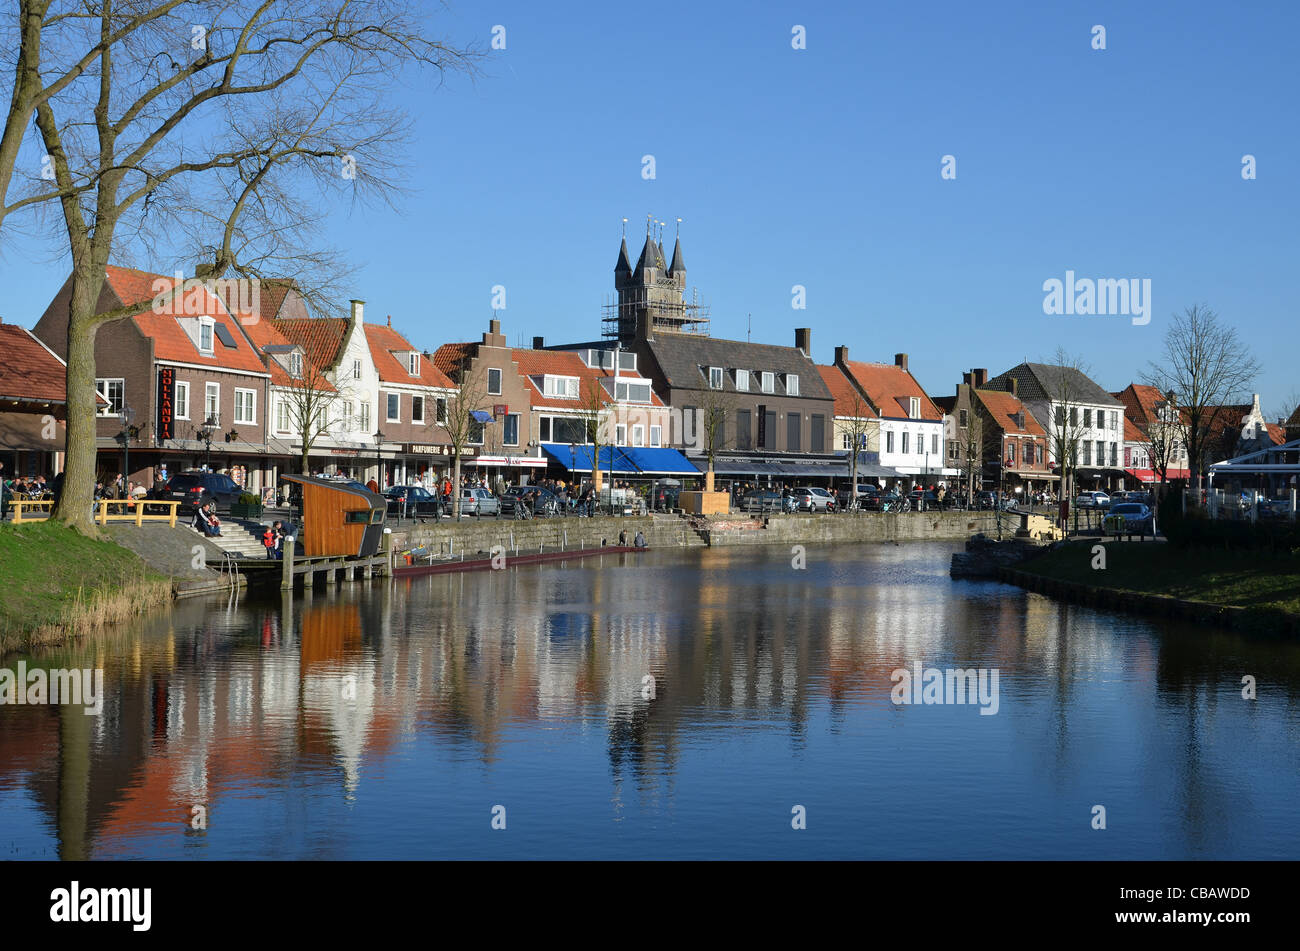 Die beliebte niederländische Grenze Stadt Sluis in Zeeland, Niederlande. Stockfoto